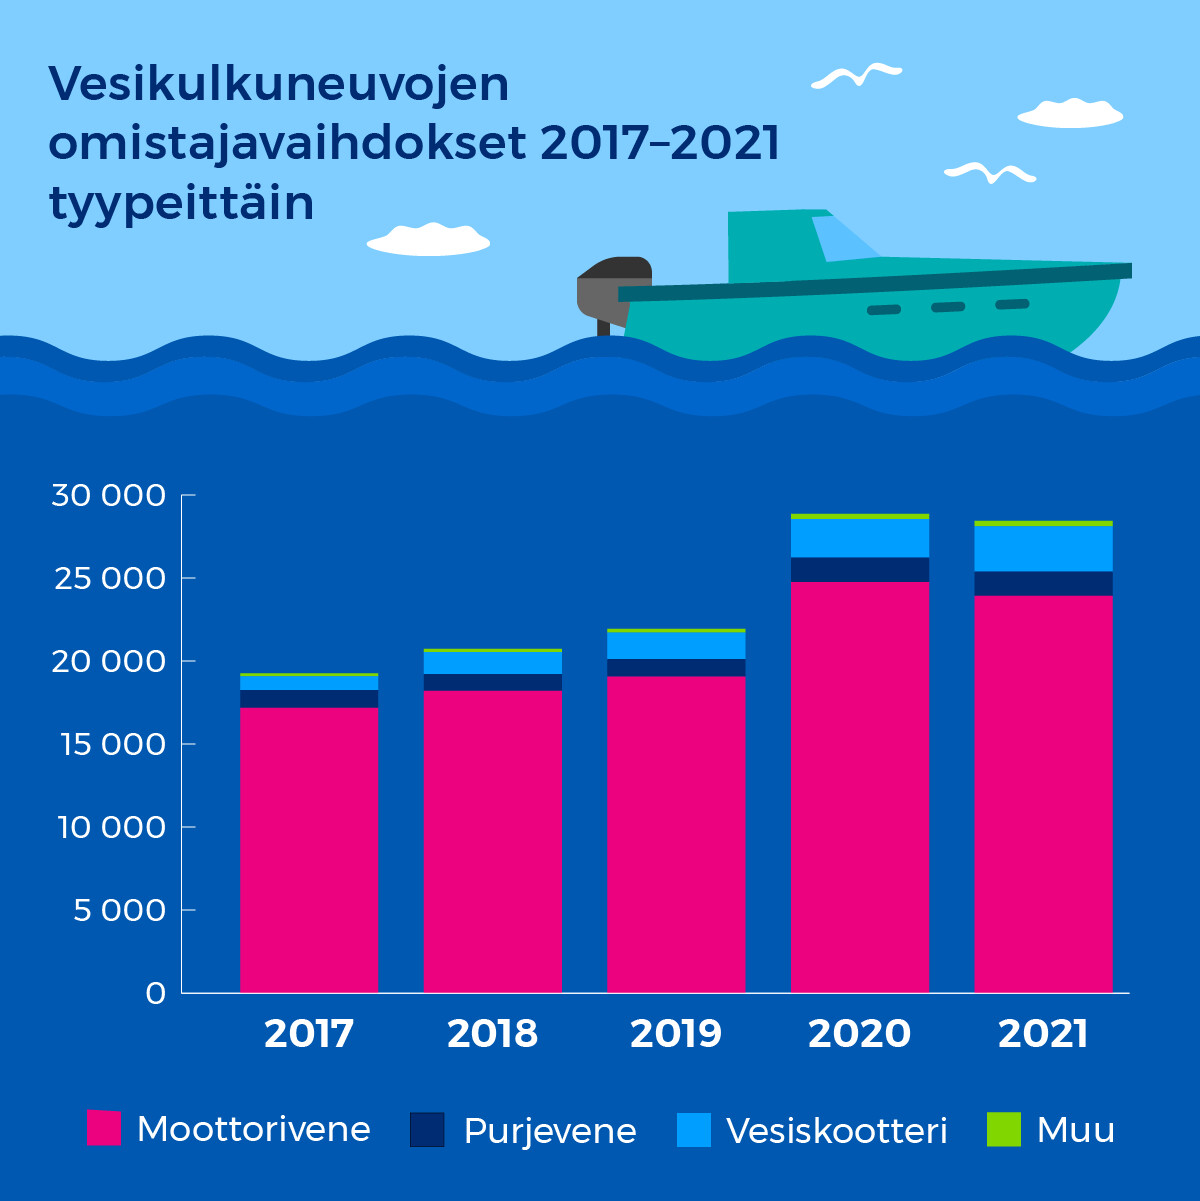 Vesikulkuneuvojen omistajavaihdokset vuosina 2017-2021 vesikulkuneuvotyypeittäin